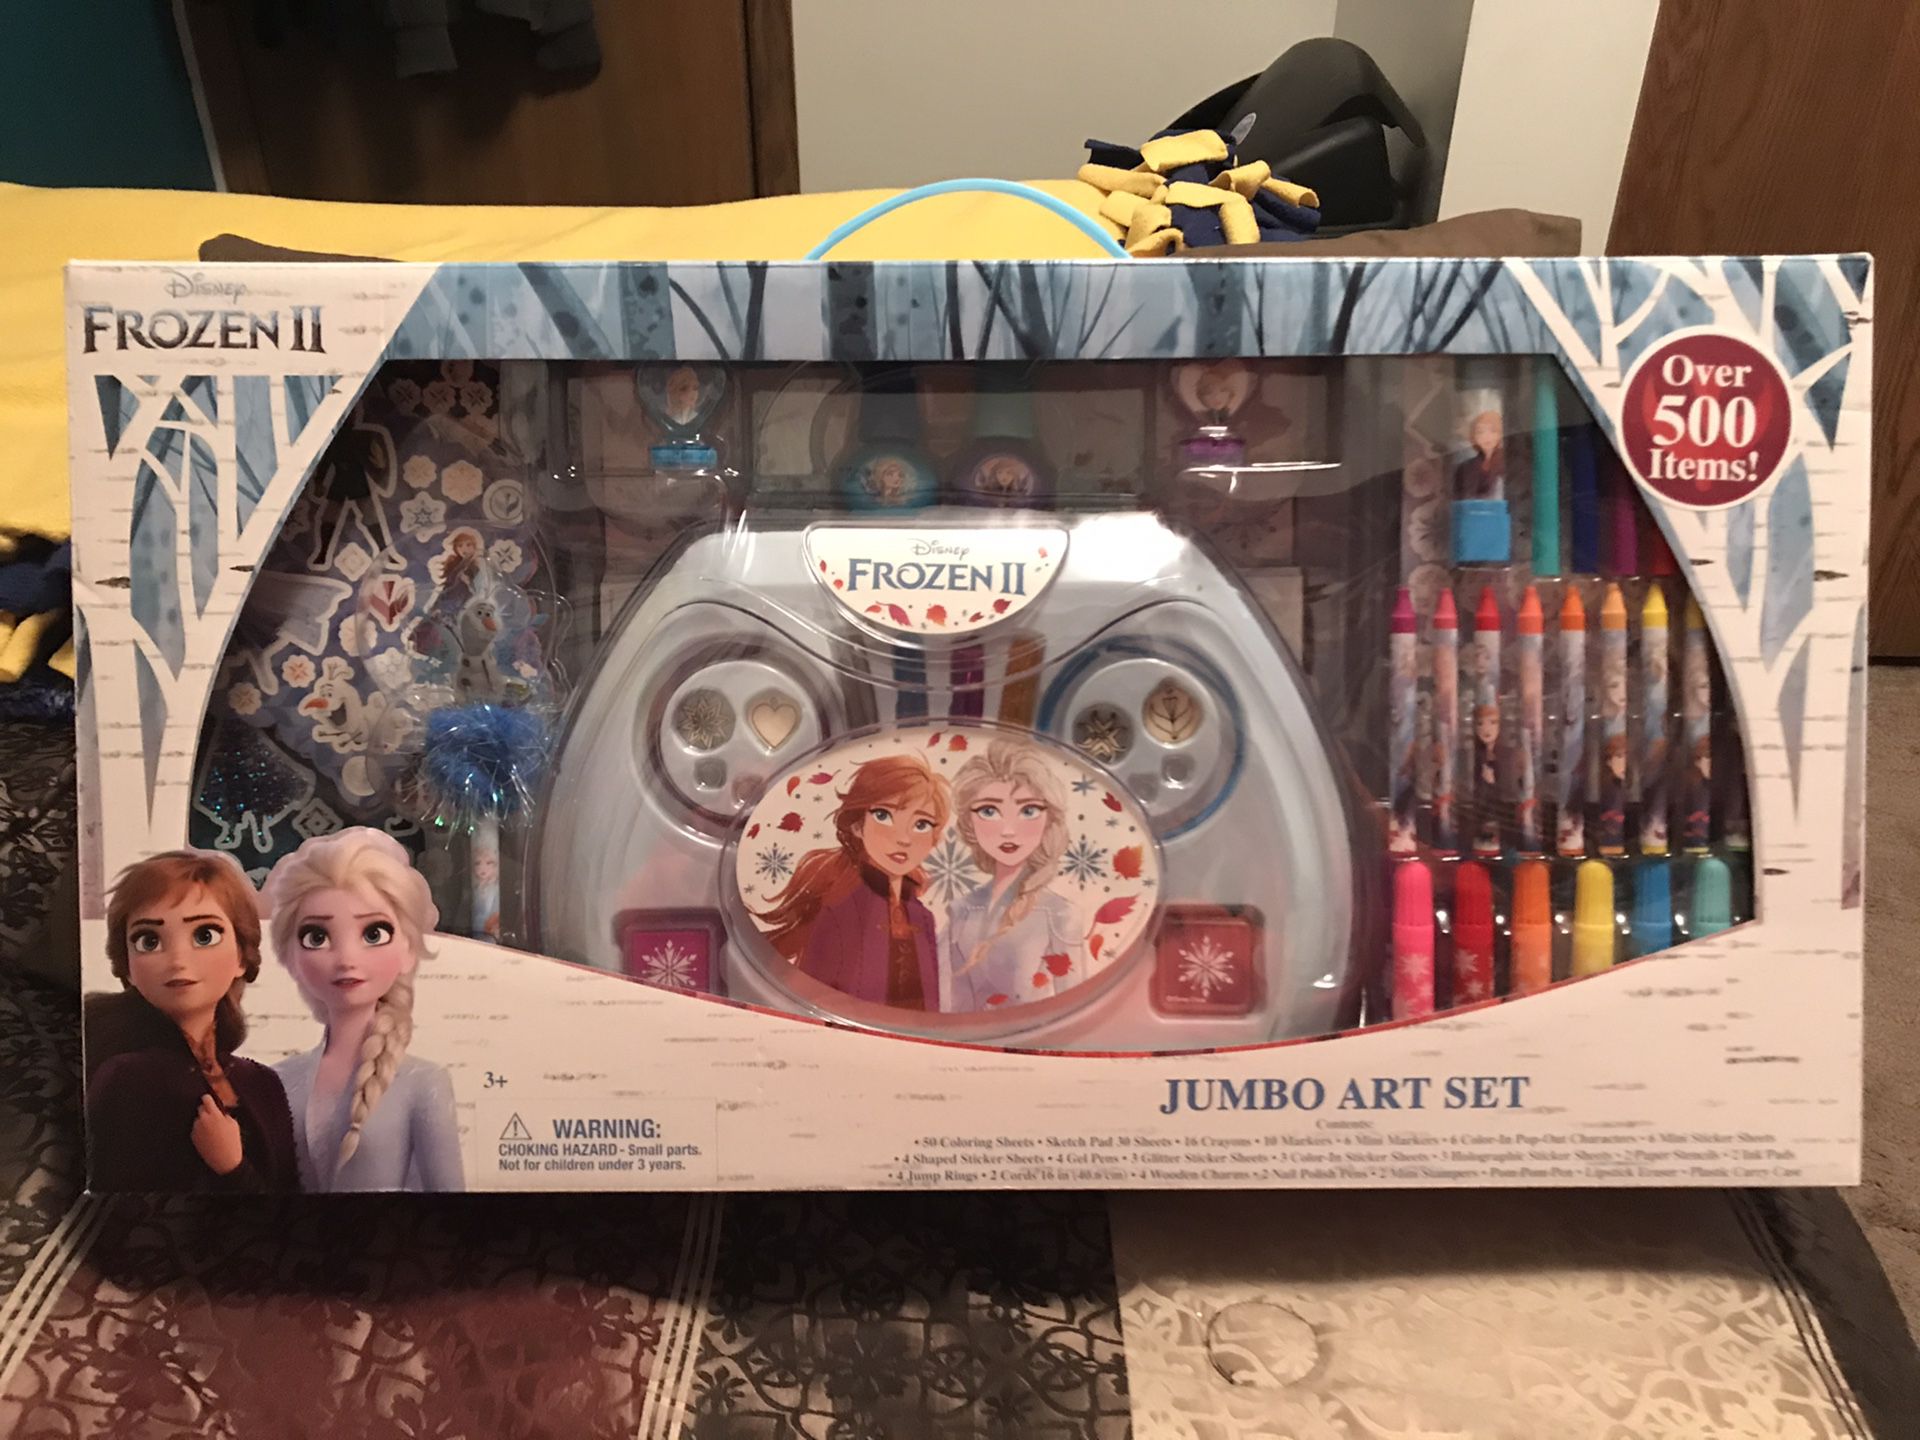 Disney’s Frozen II Jumbo Art Set Over 500 Pieces